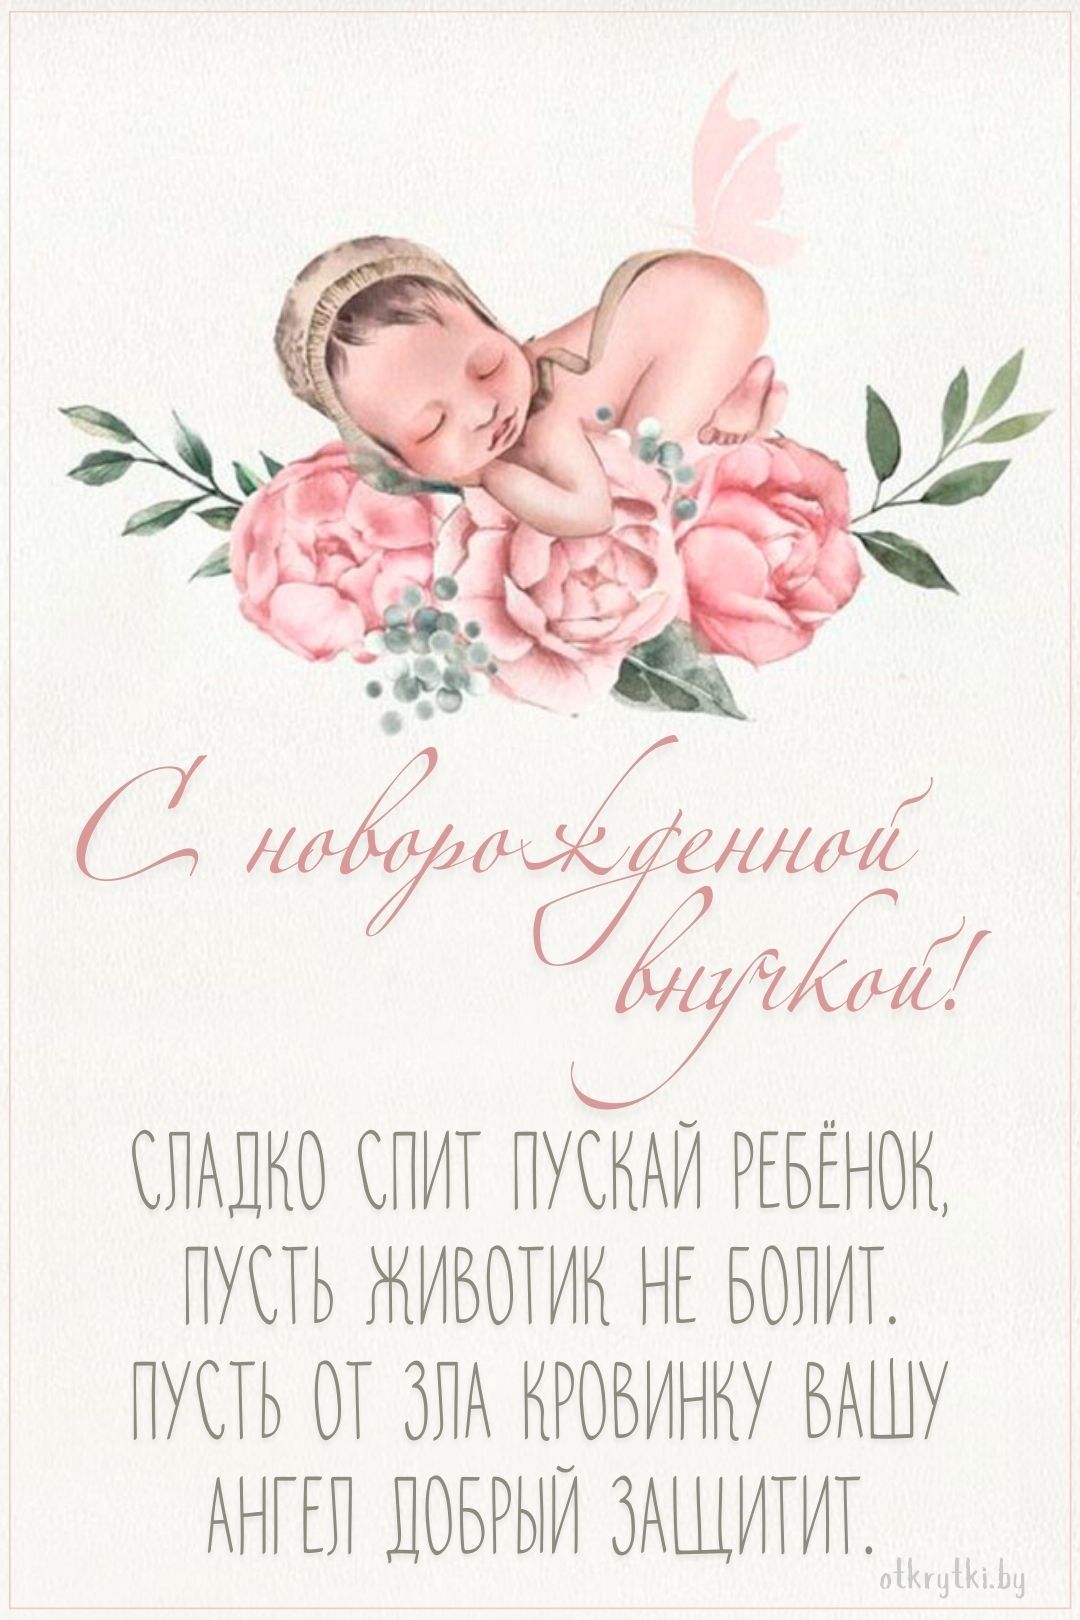 Картинка с новорожденной внучкой